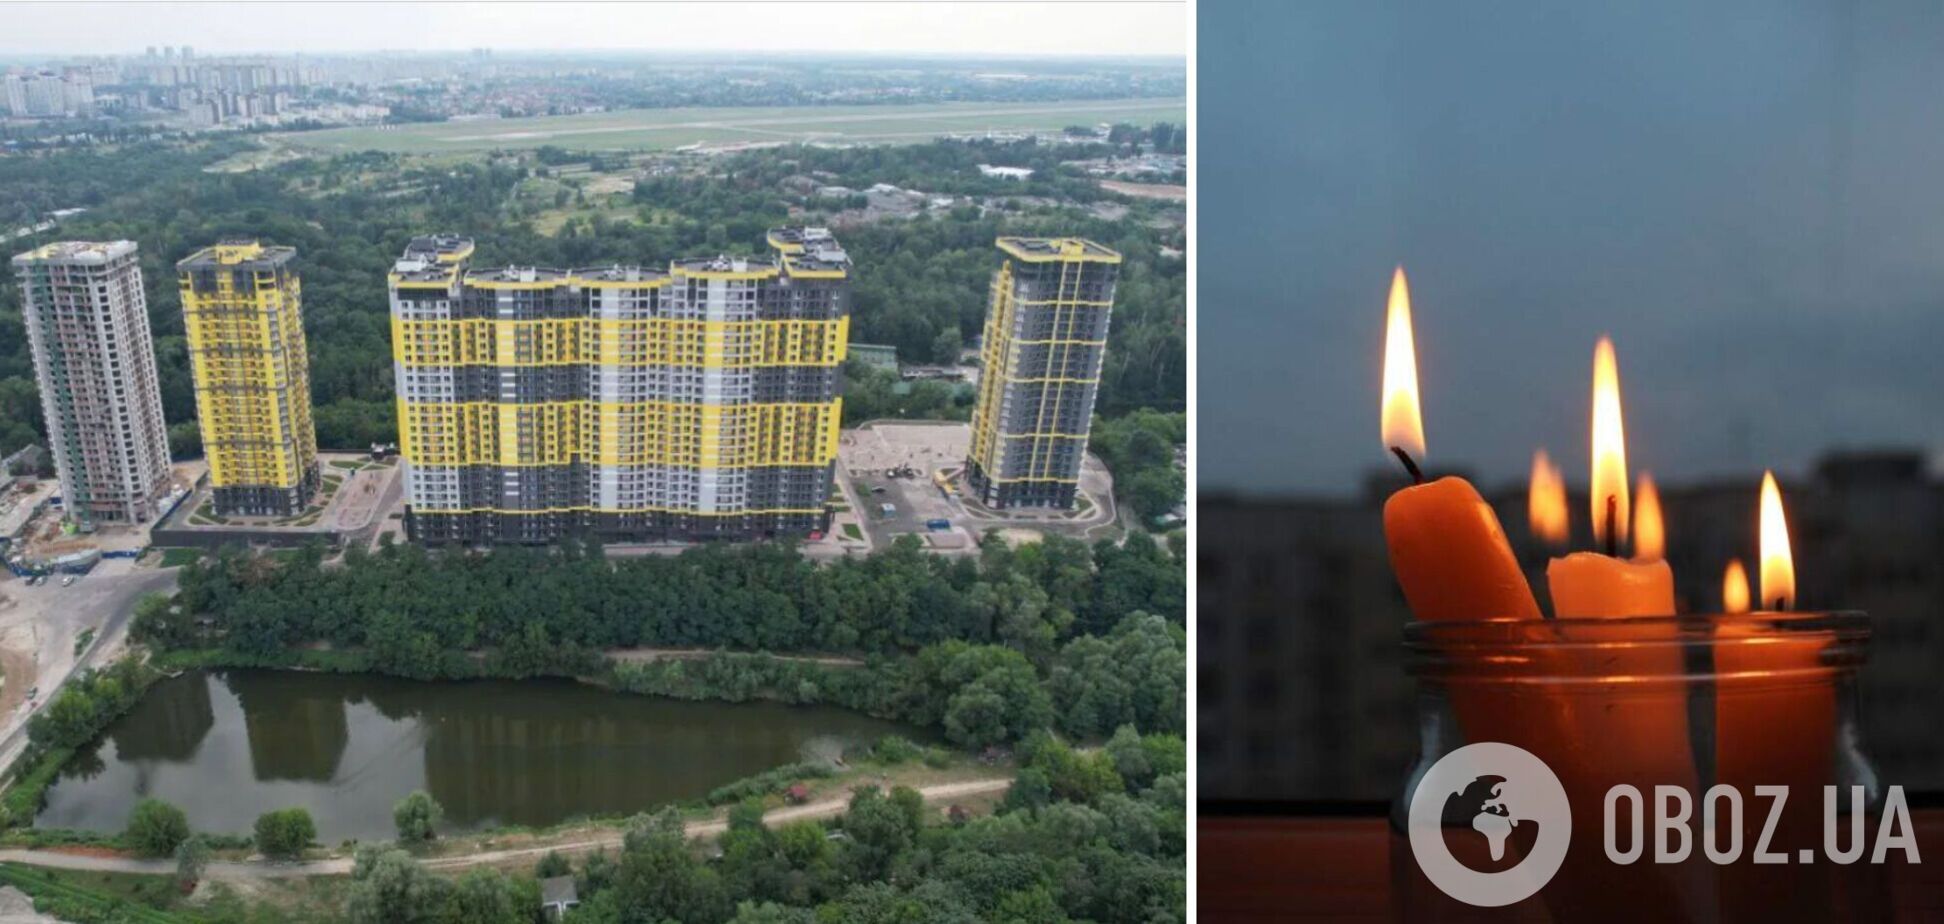 Світло 2 рази на тиждень: мешканці ЖК Київміськбуду просять вплинути на забудовника, який залишив їх без електрики